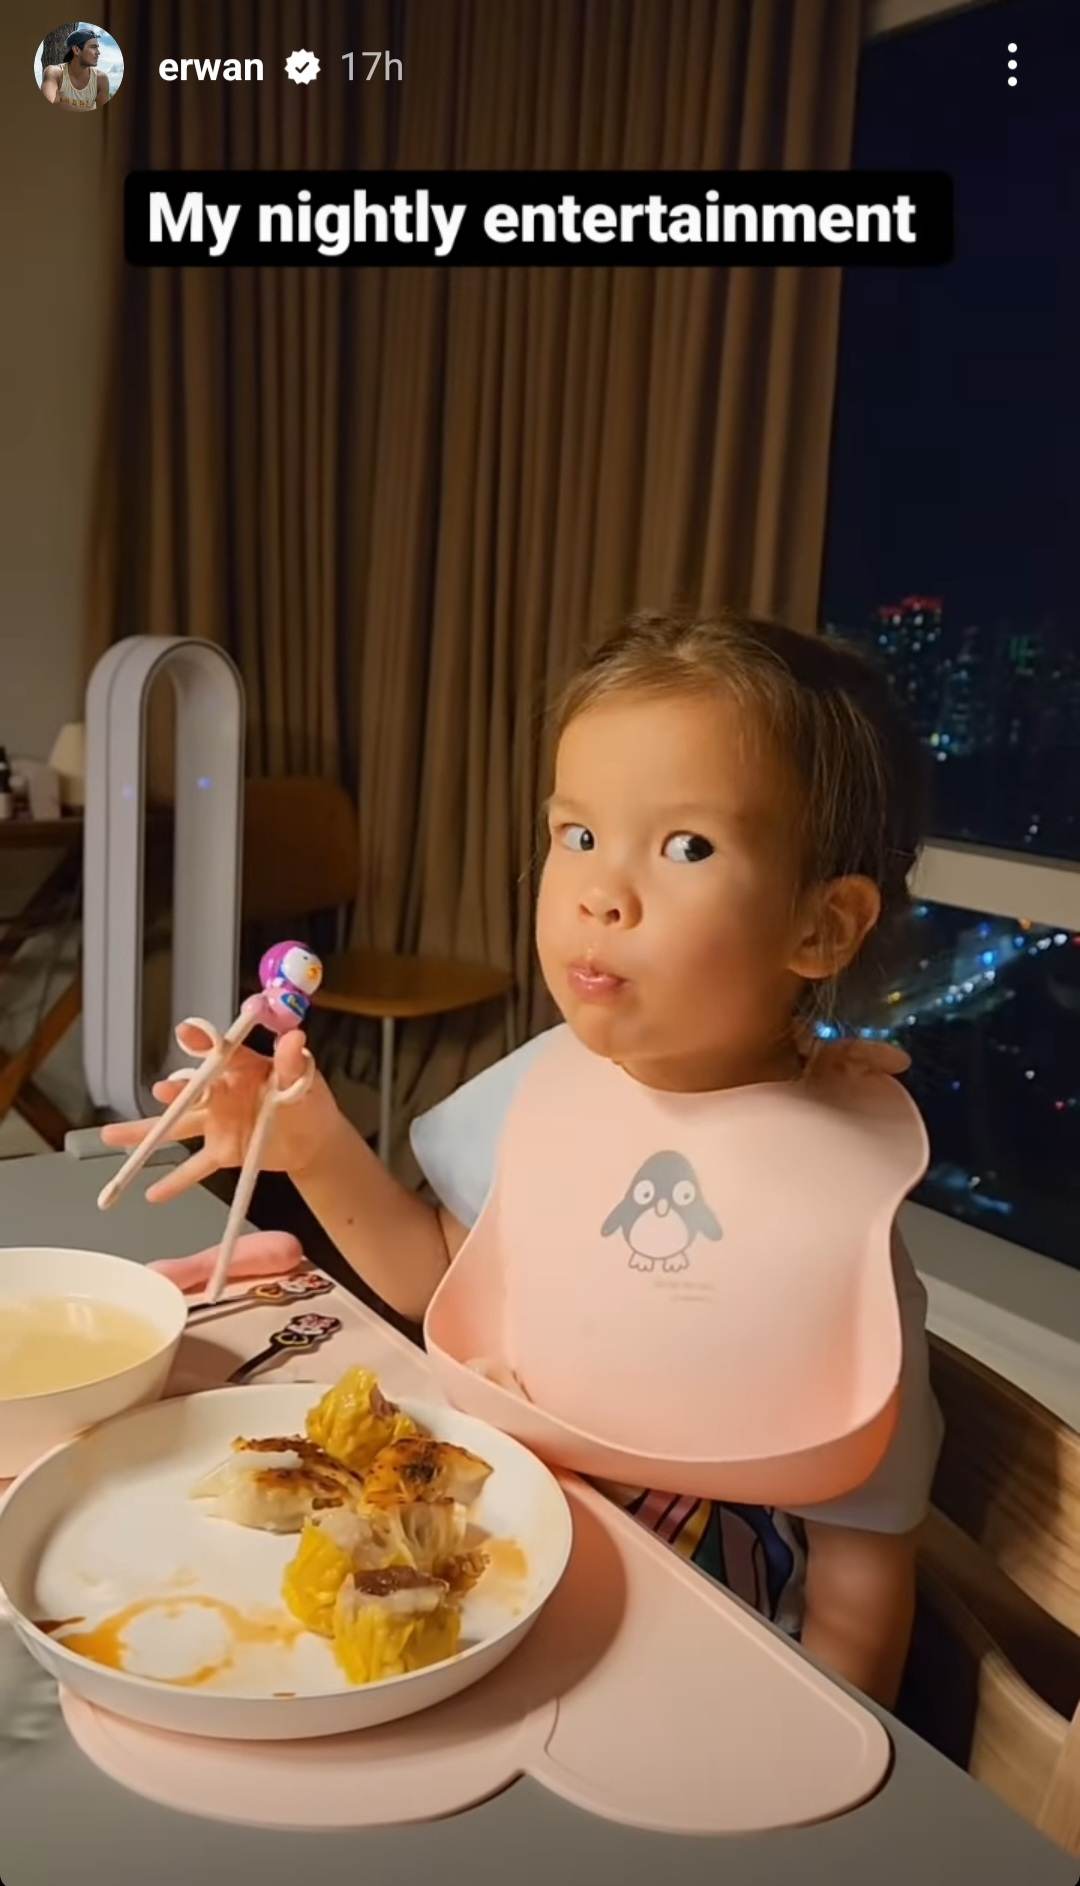 Erwan Heussaff shares cute video of Dahlia eating with chopsticks